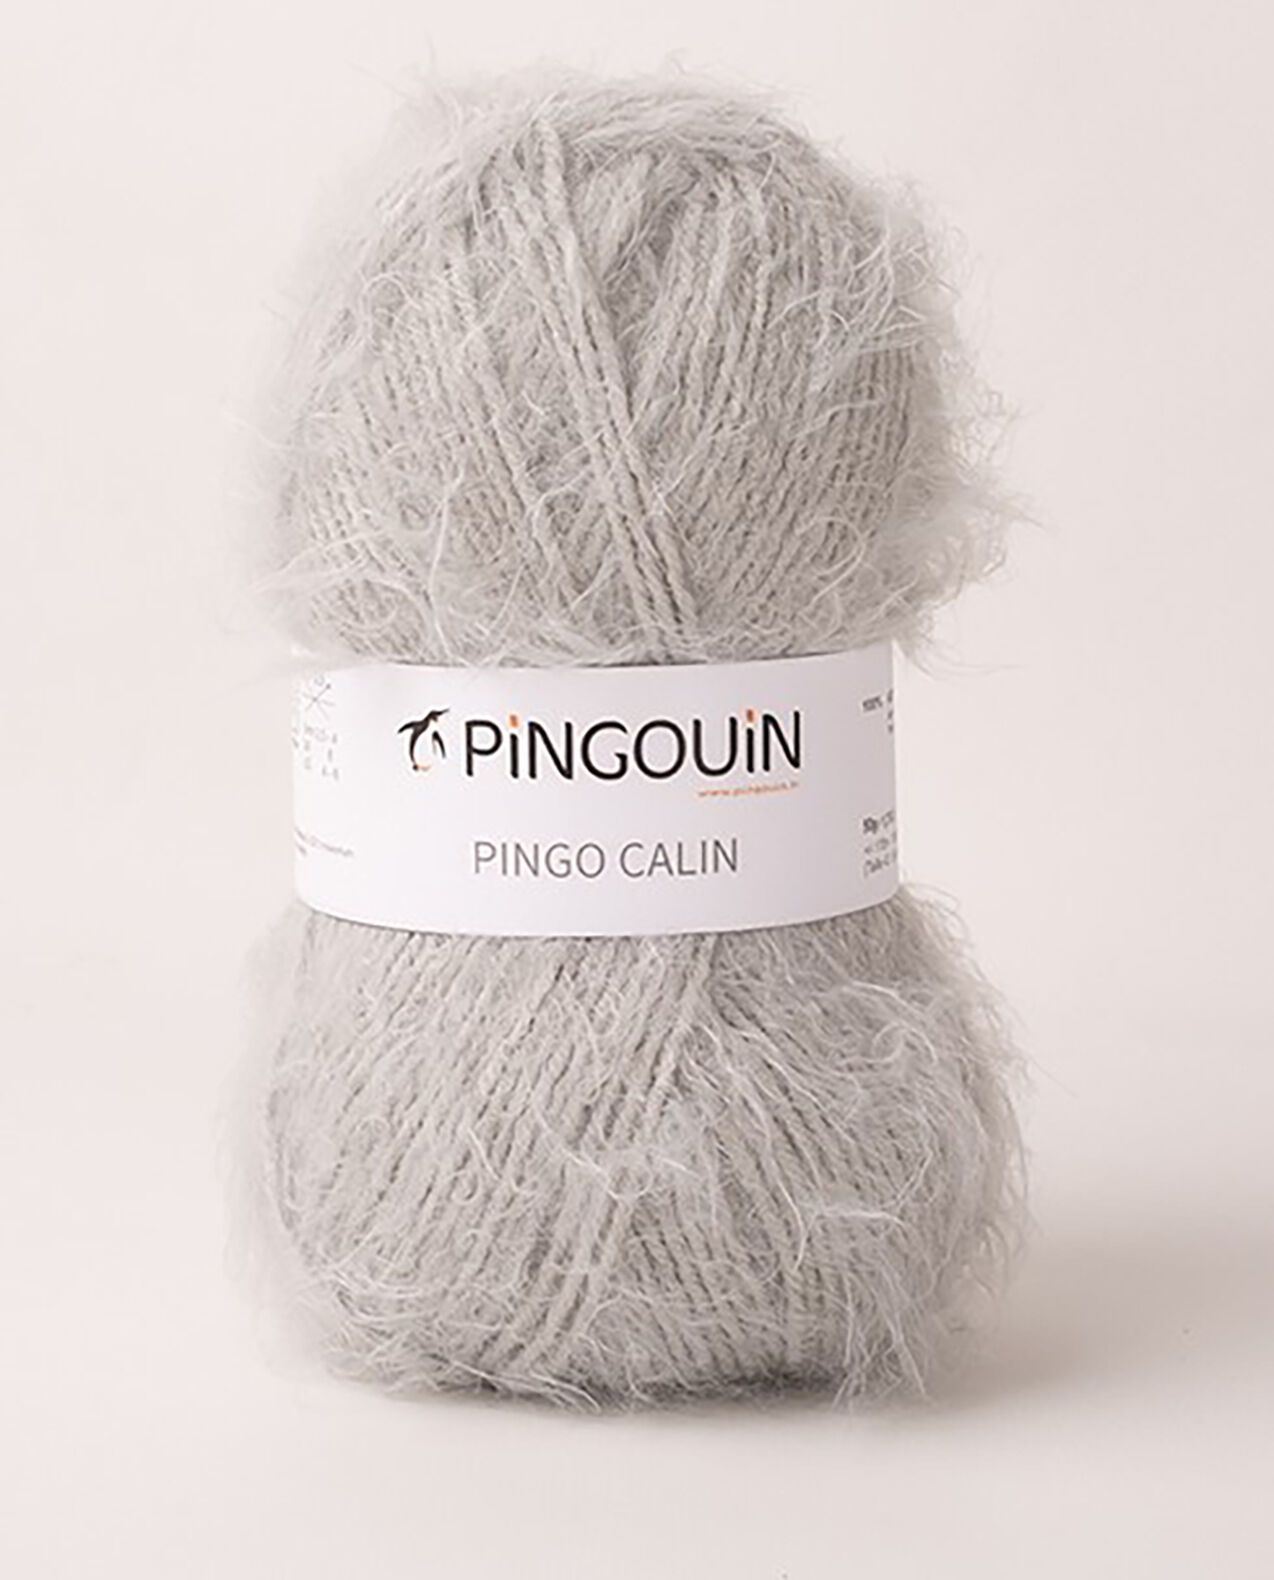 Pingouin - Pelote de Laine PINGO CALIN de 50g - Laine à Tricoter - 38%  ACRYLIQUE,62% POLYAMIDE - Aiguille n°5 - Couleur CIEL | Rakuten